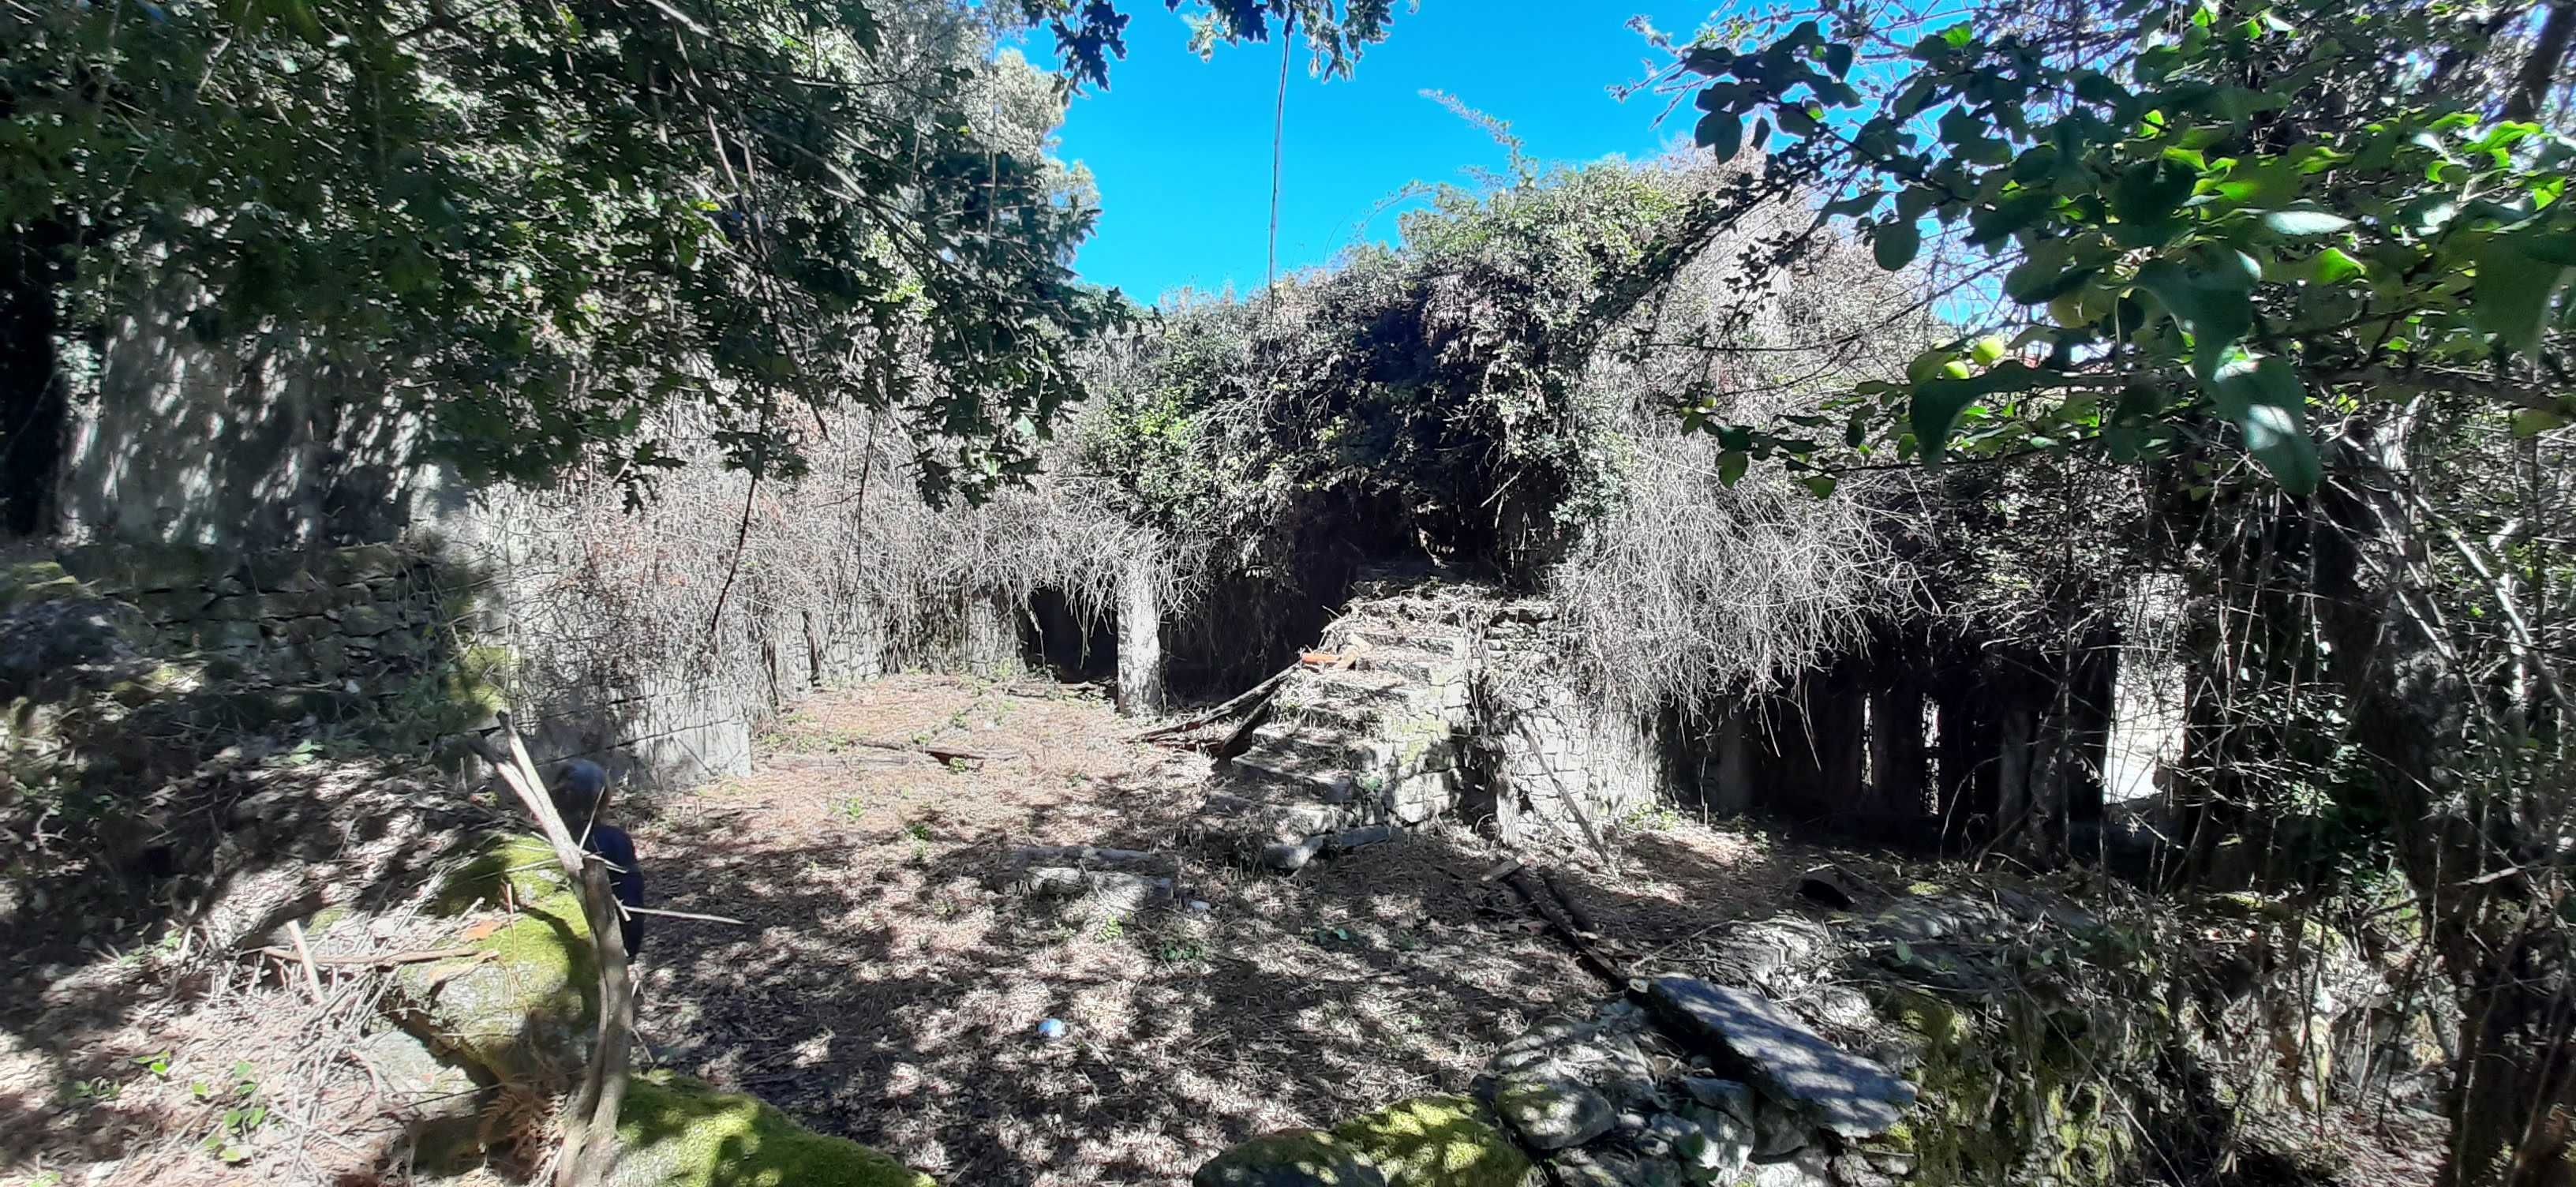 Terreno com casa em pedra (ruinas)Parque nacional Peneda do Gerês